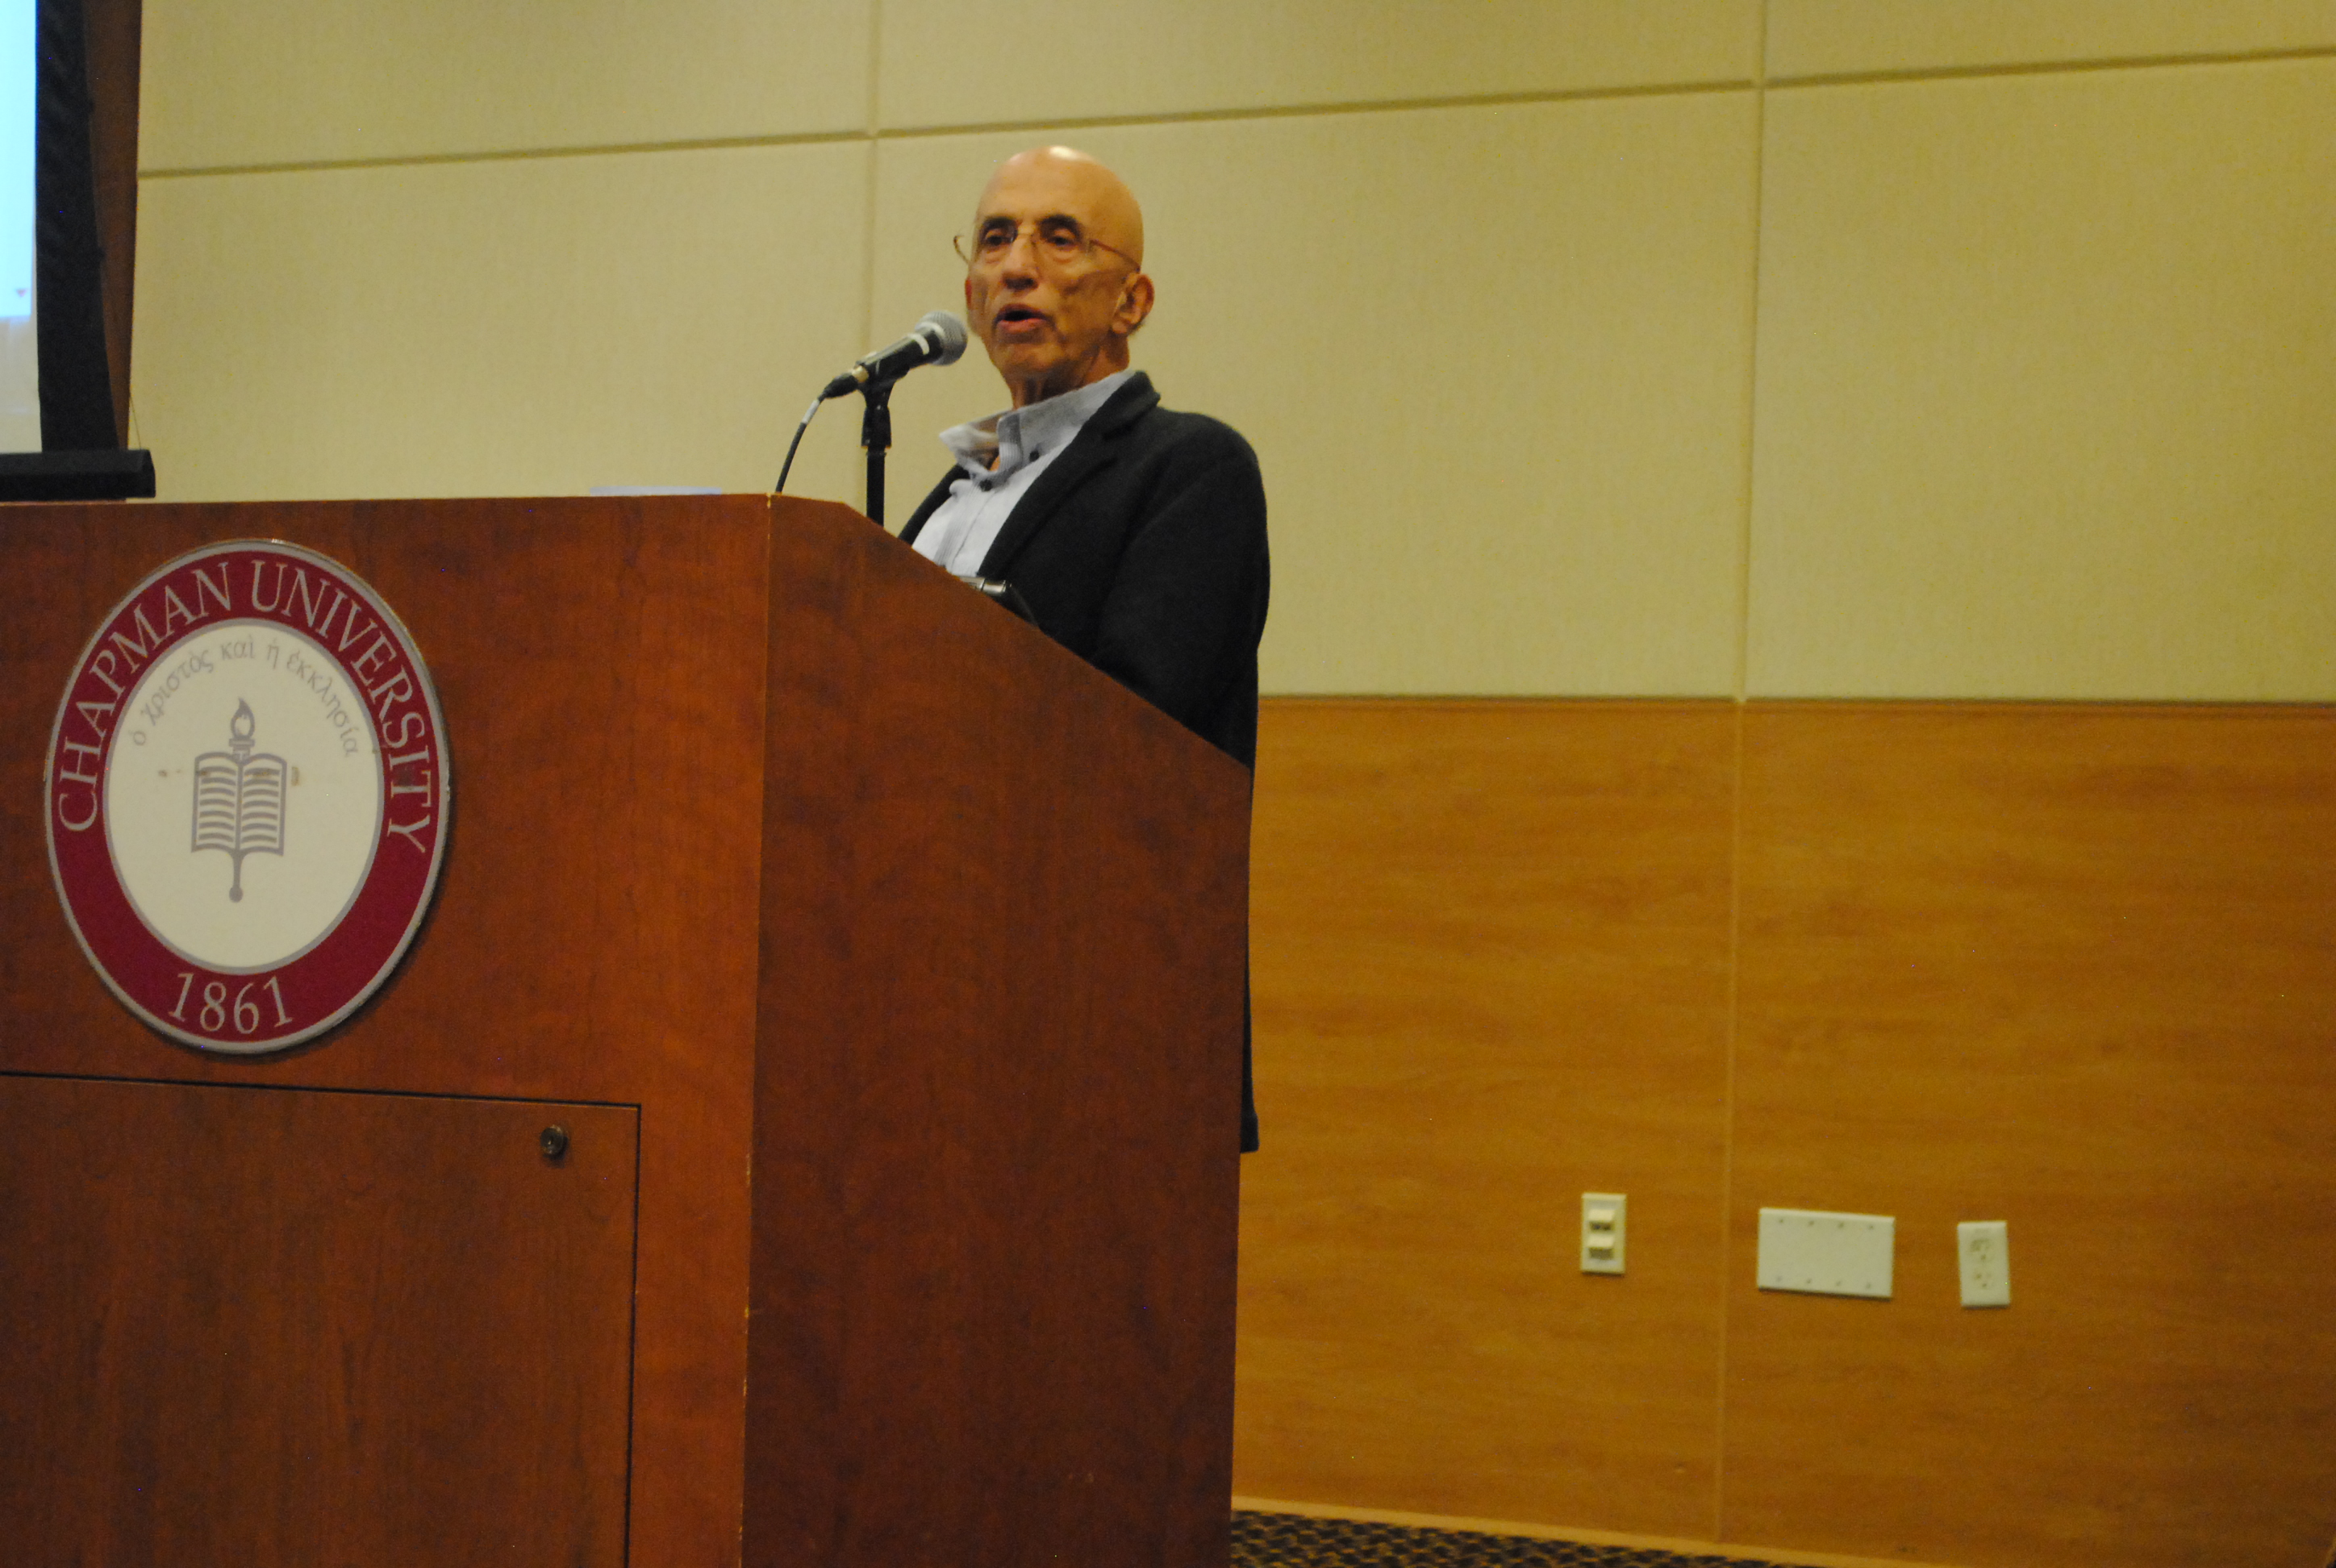 Image: Man speaking at Chapman University podium.